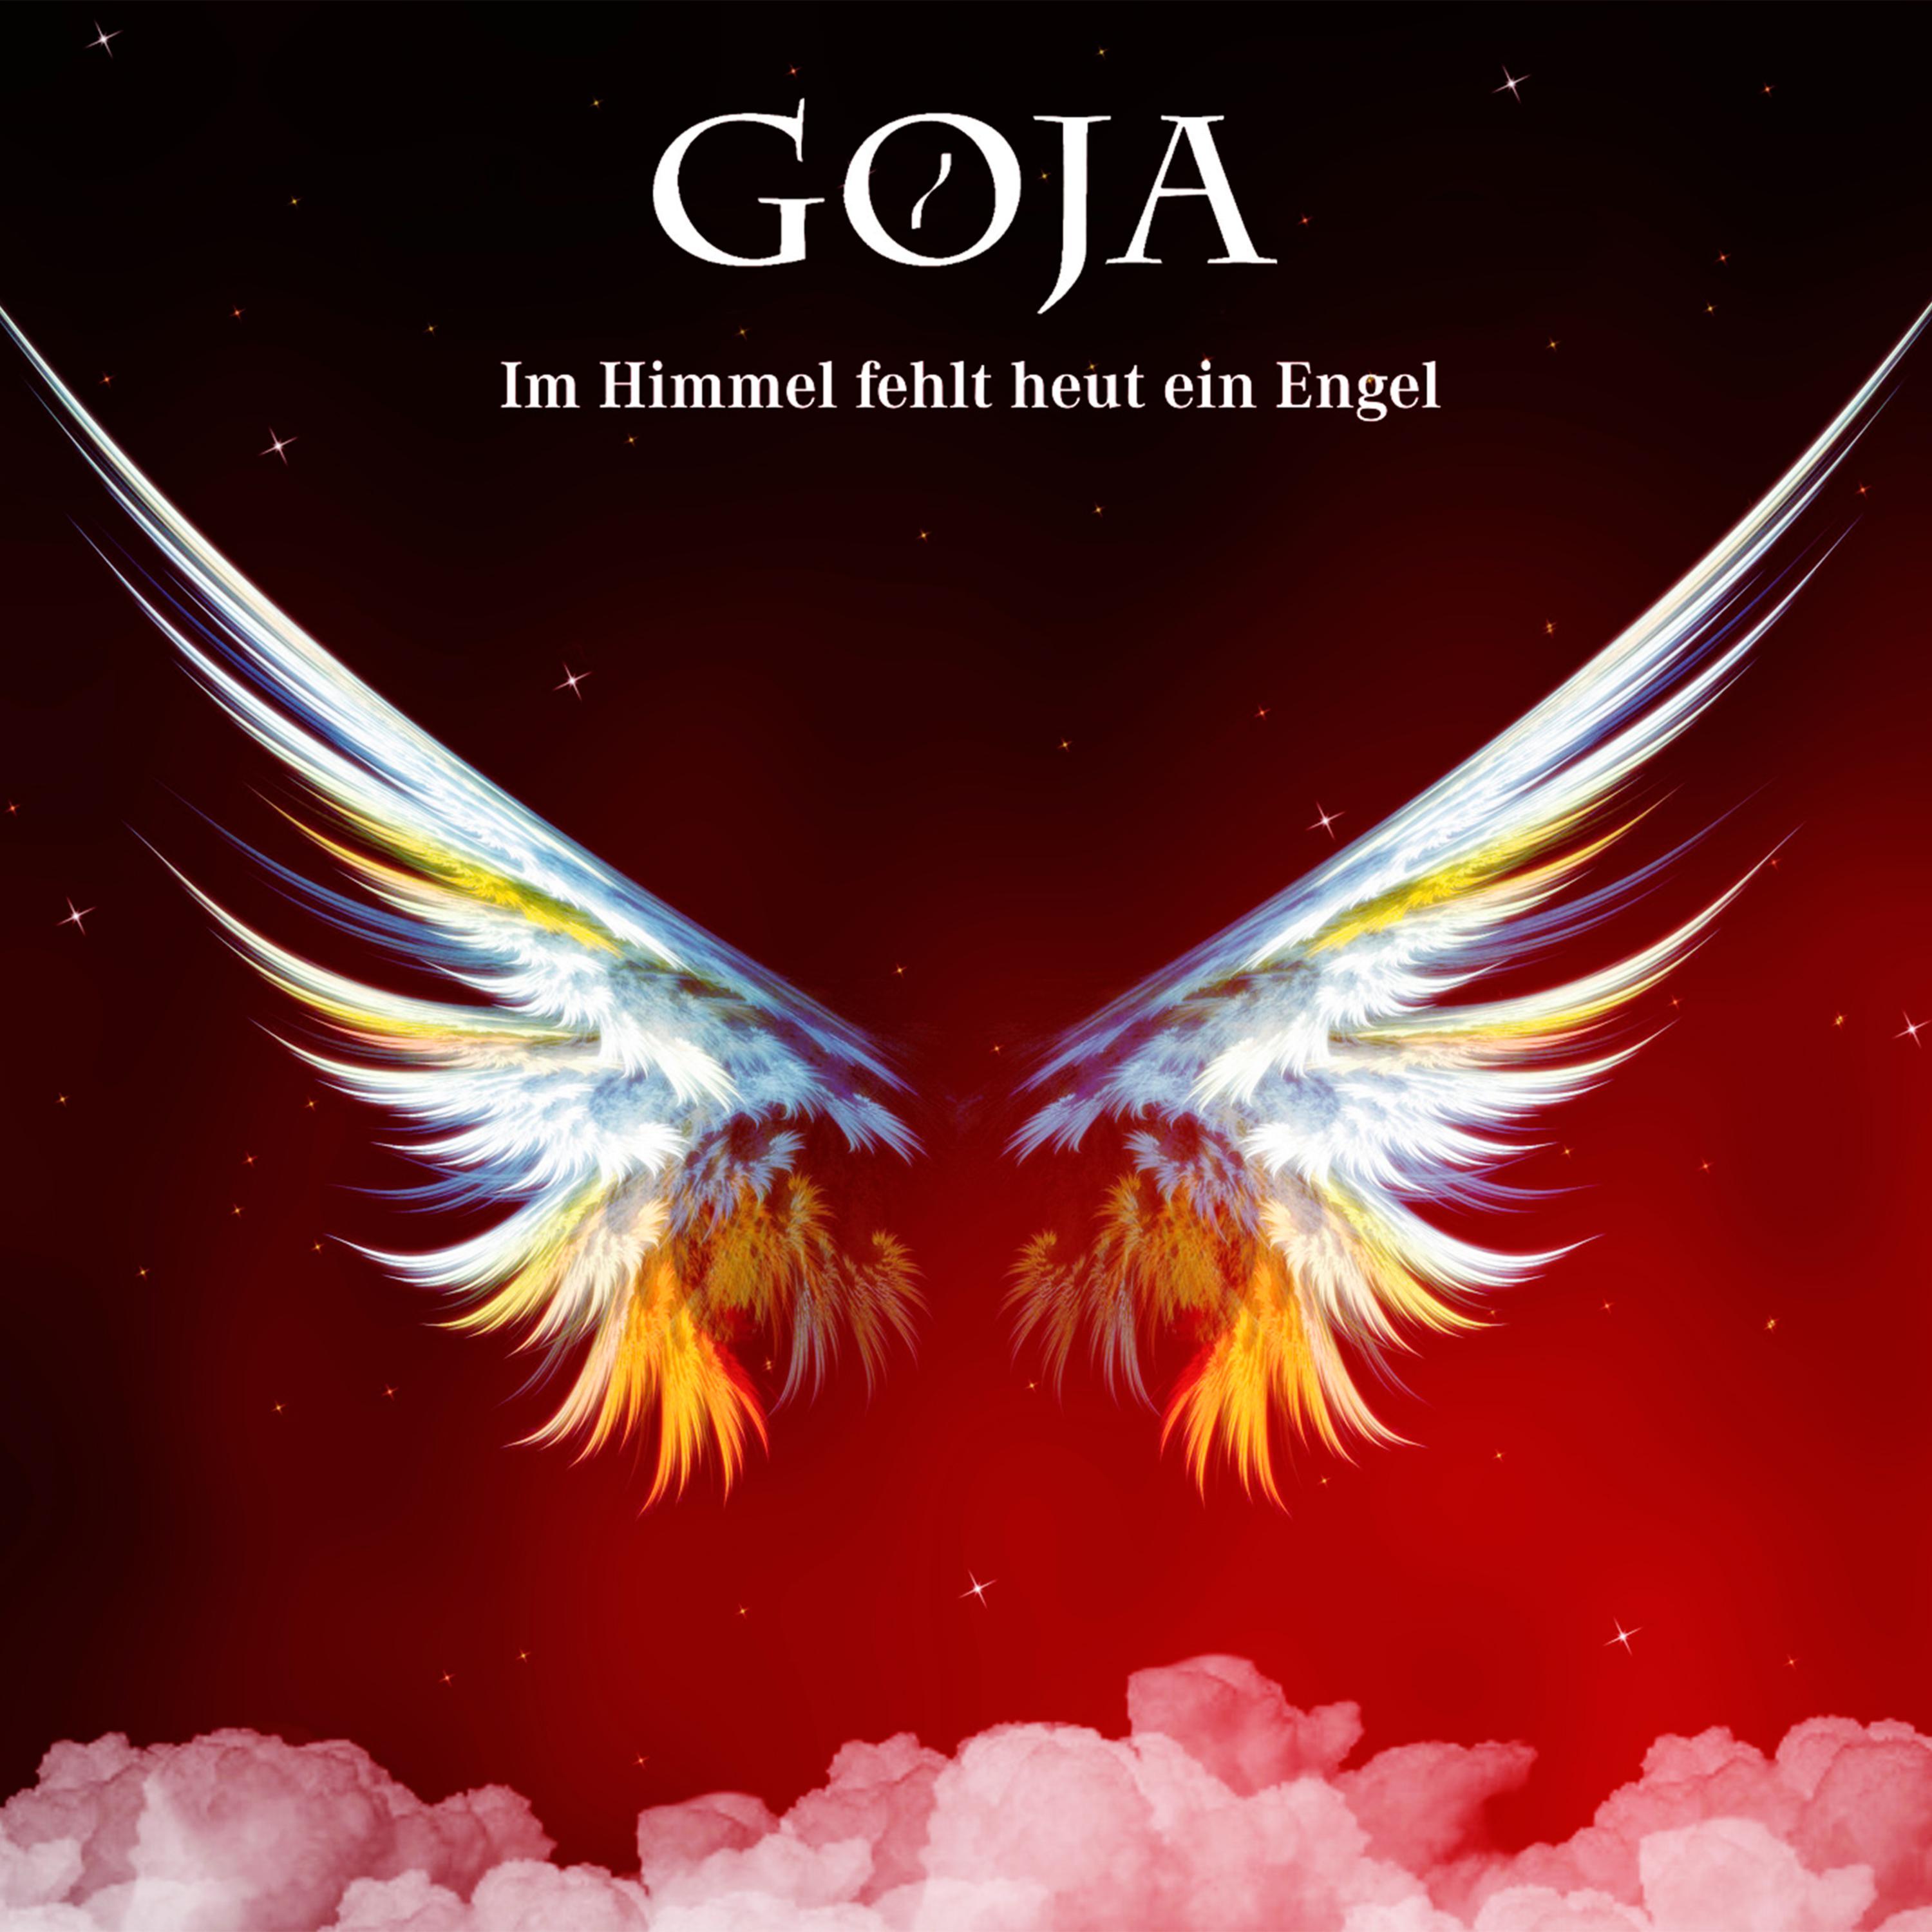 Goja - Im Himmel fehlt heut ein Engel (Single Version)